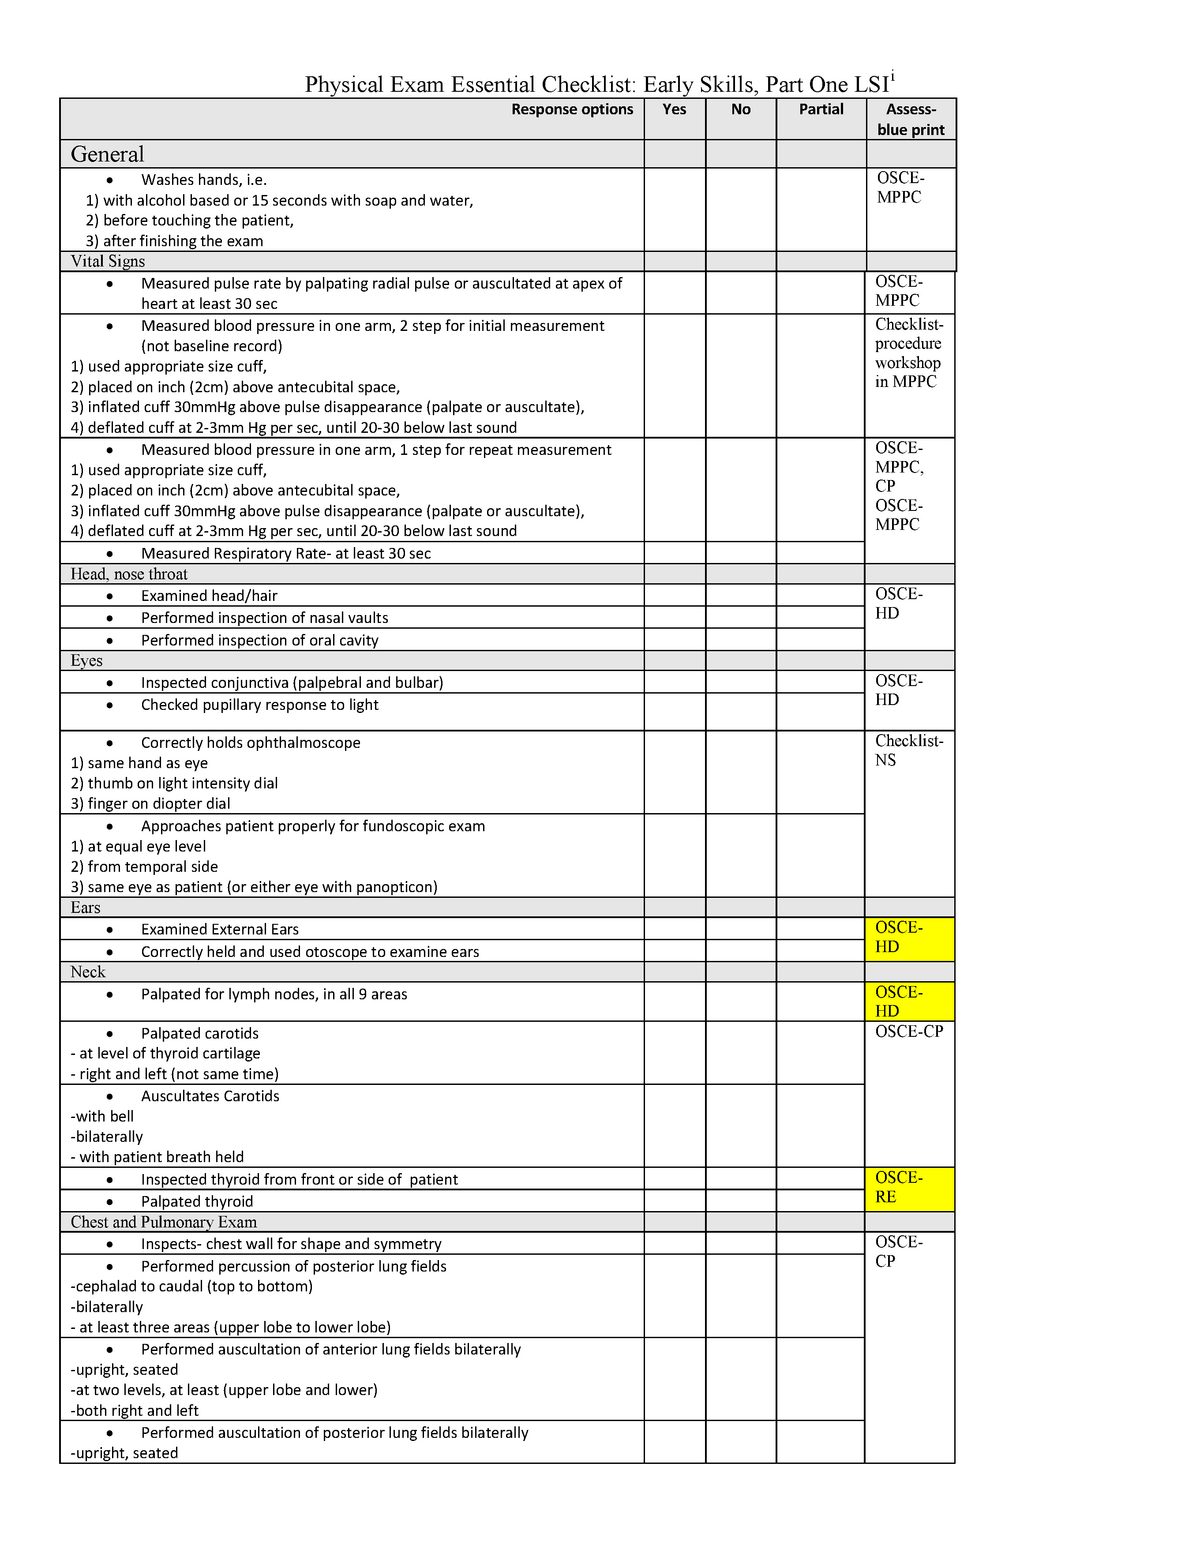 PE Essential Checklist for OSCE Part 1 - Physical Exam Essential ...